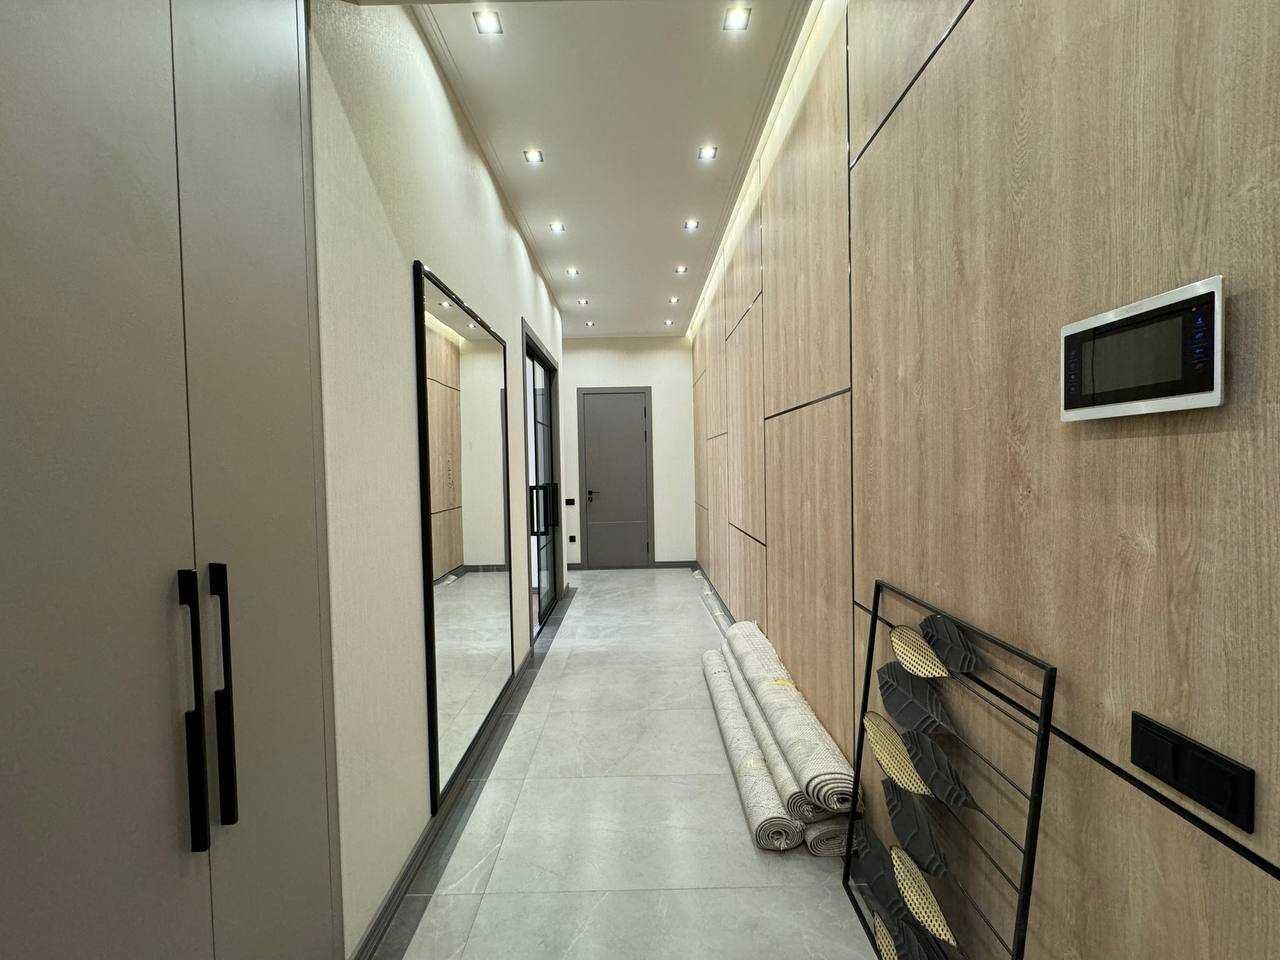 3 комнатная новая квартира в Barocco ЕВРО люкс ремонт. Гидромедцентр